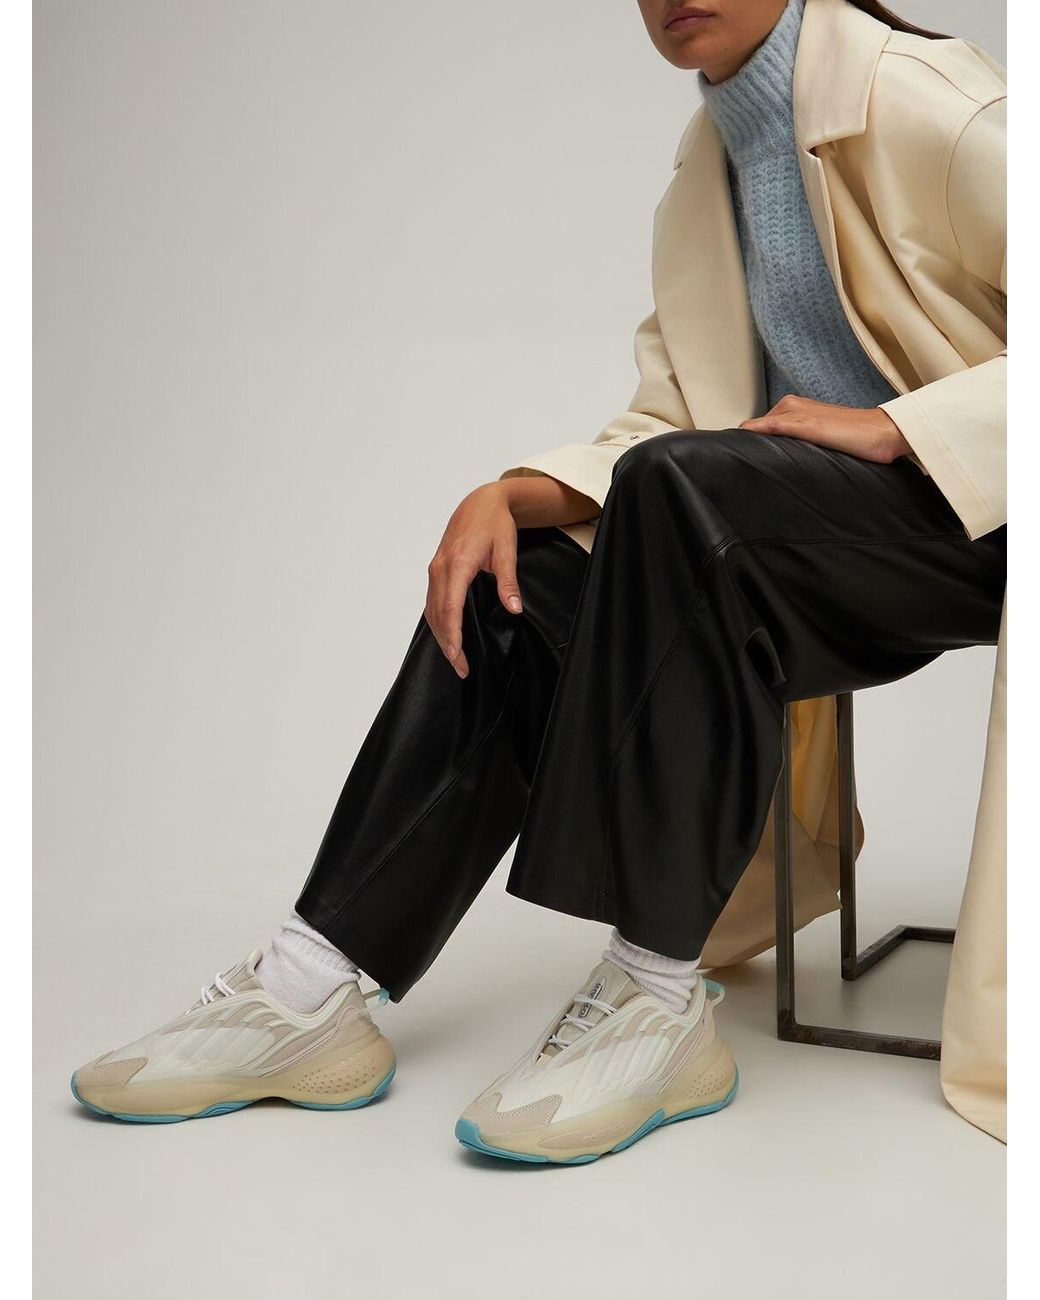 adidas Originals Ozrah Sneakers | Lyst UK